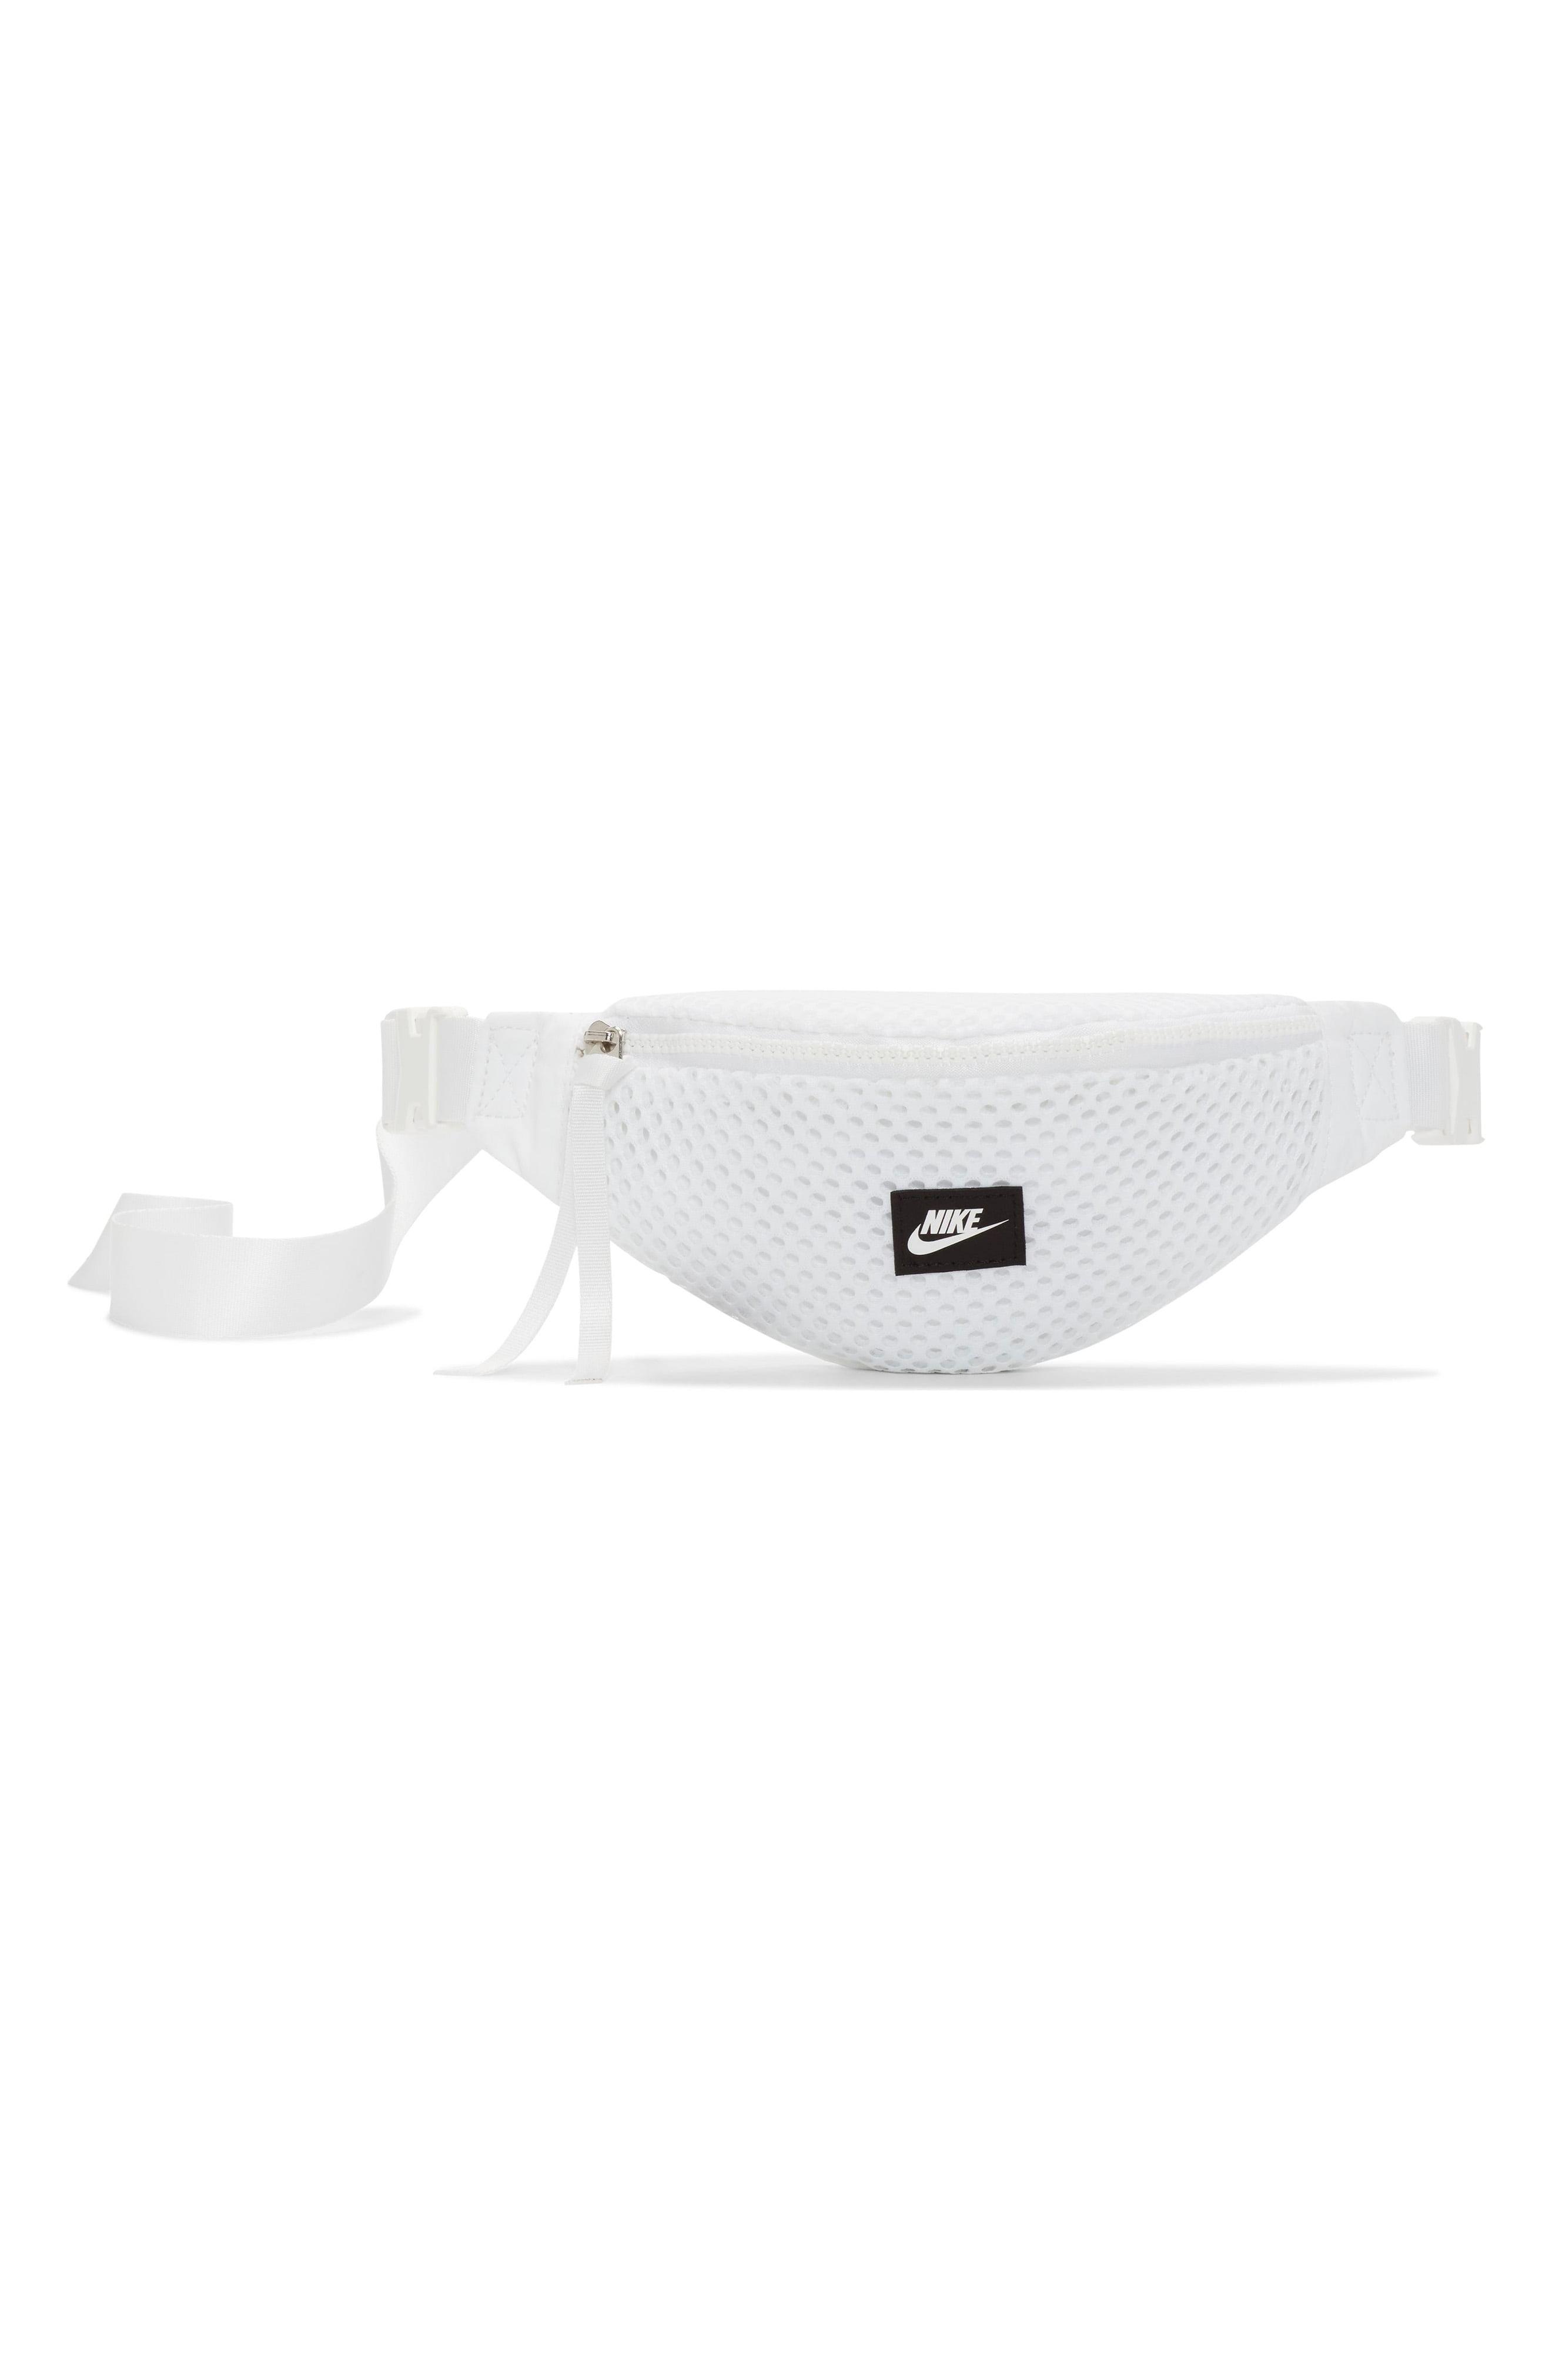 Nike Air Mesh Belt Bag in White/White 